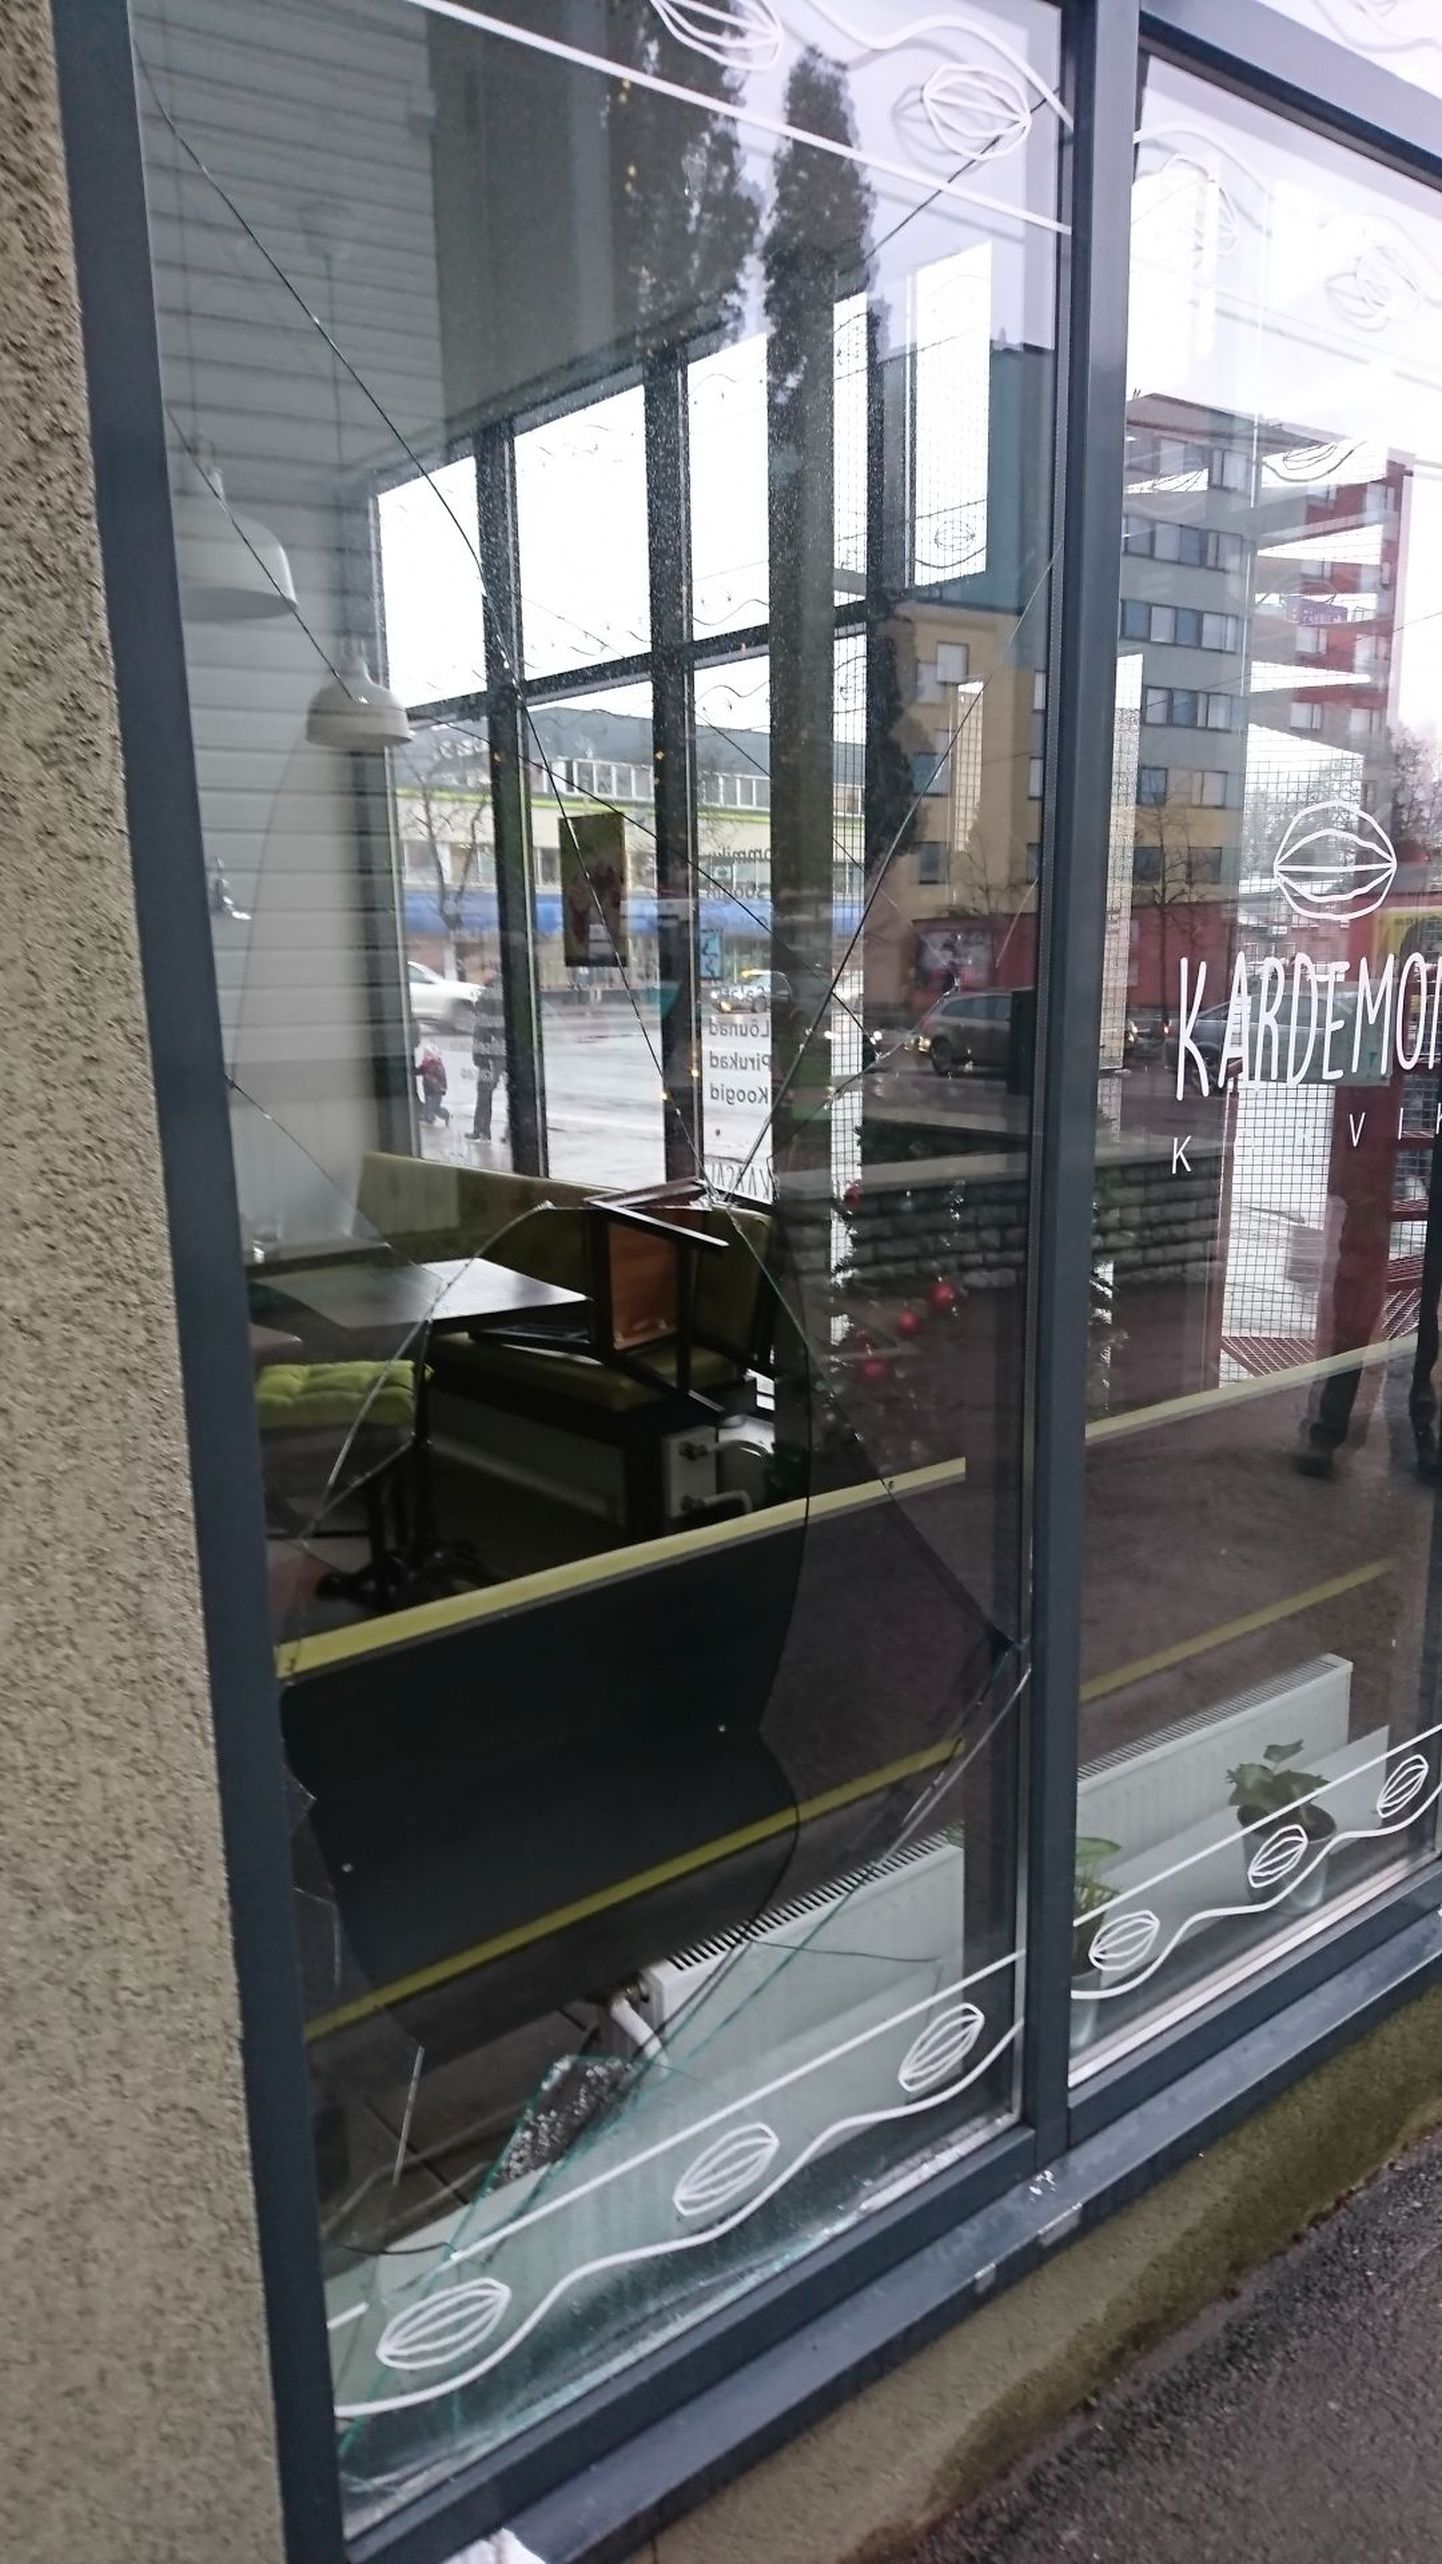 Чтобы забраться в кафе вор разбил окно.